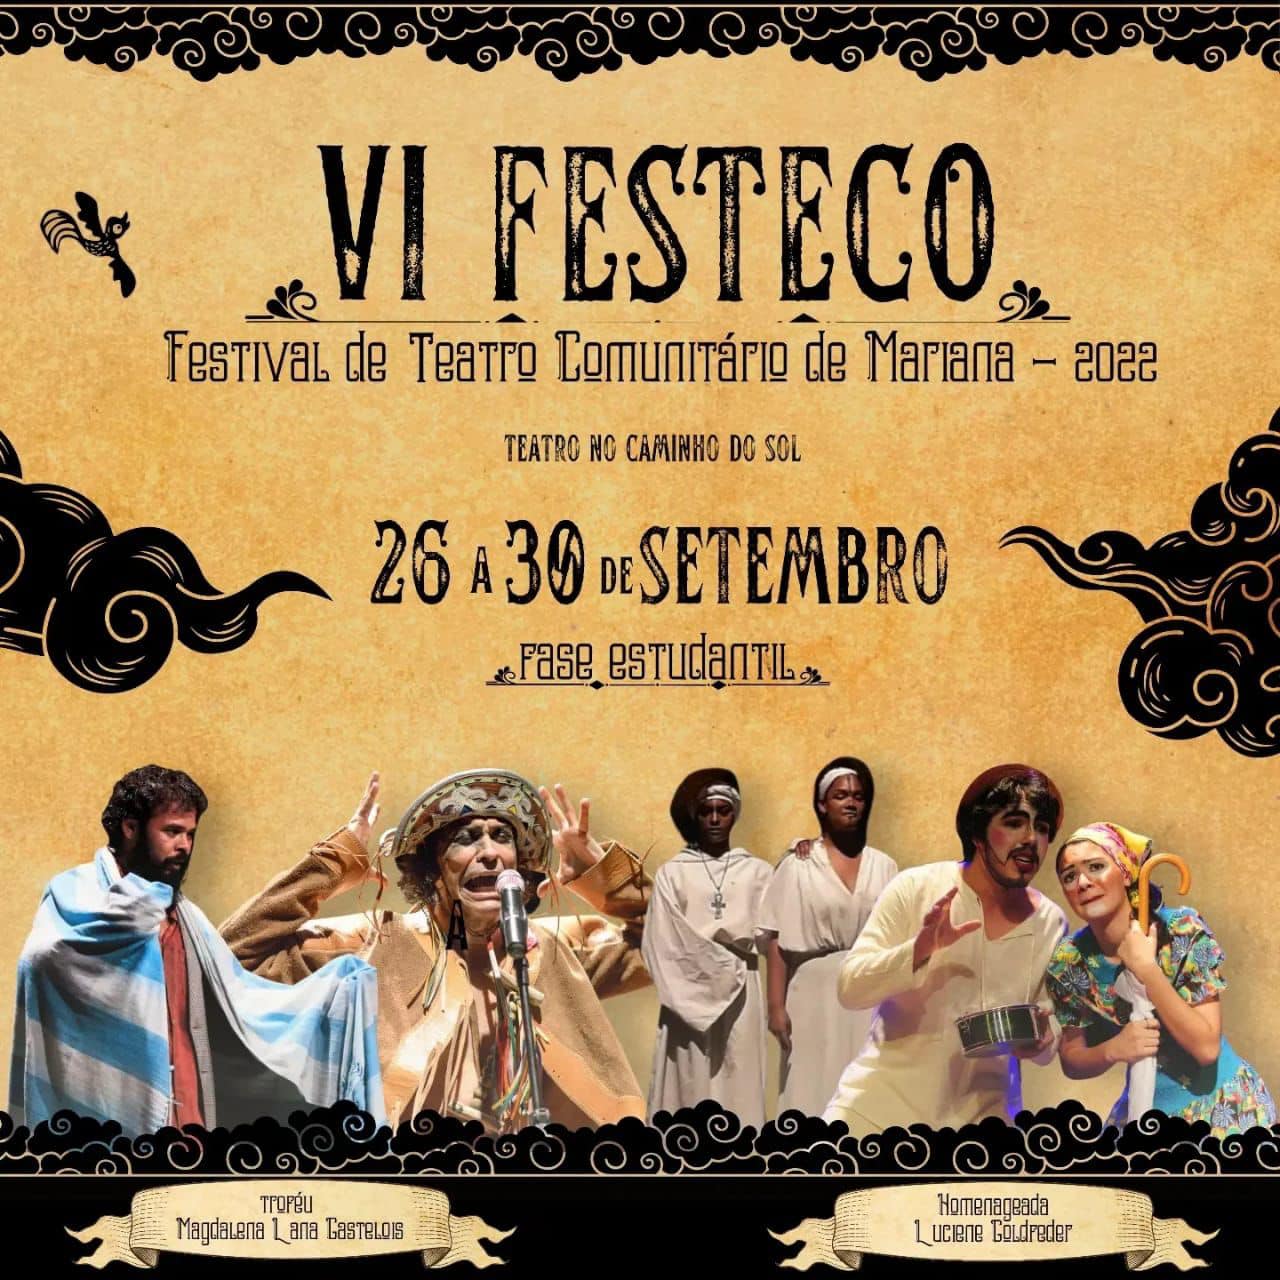 6ª edição do Festeco, Festival de Teatro Comunitário de Mariana, começa nesta segunda (26)